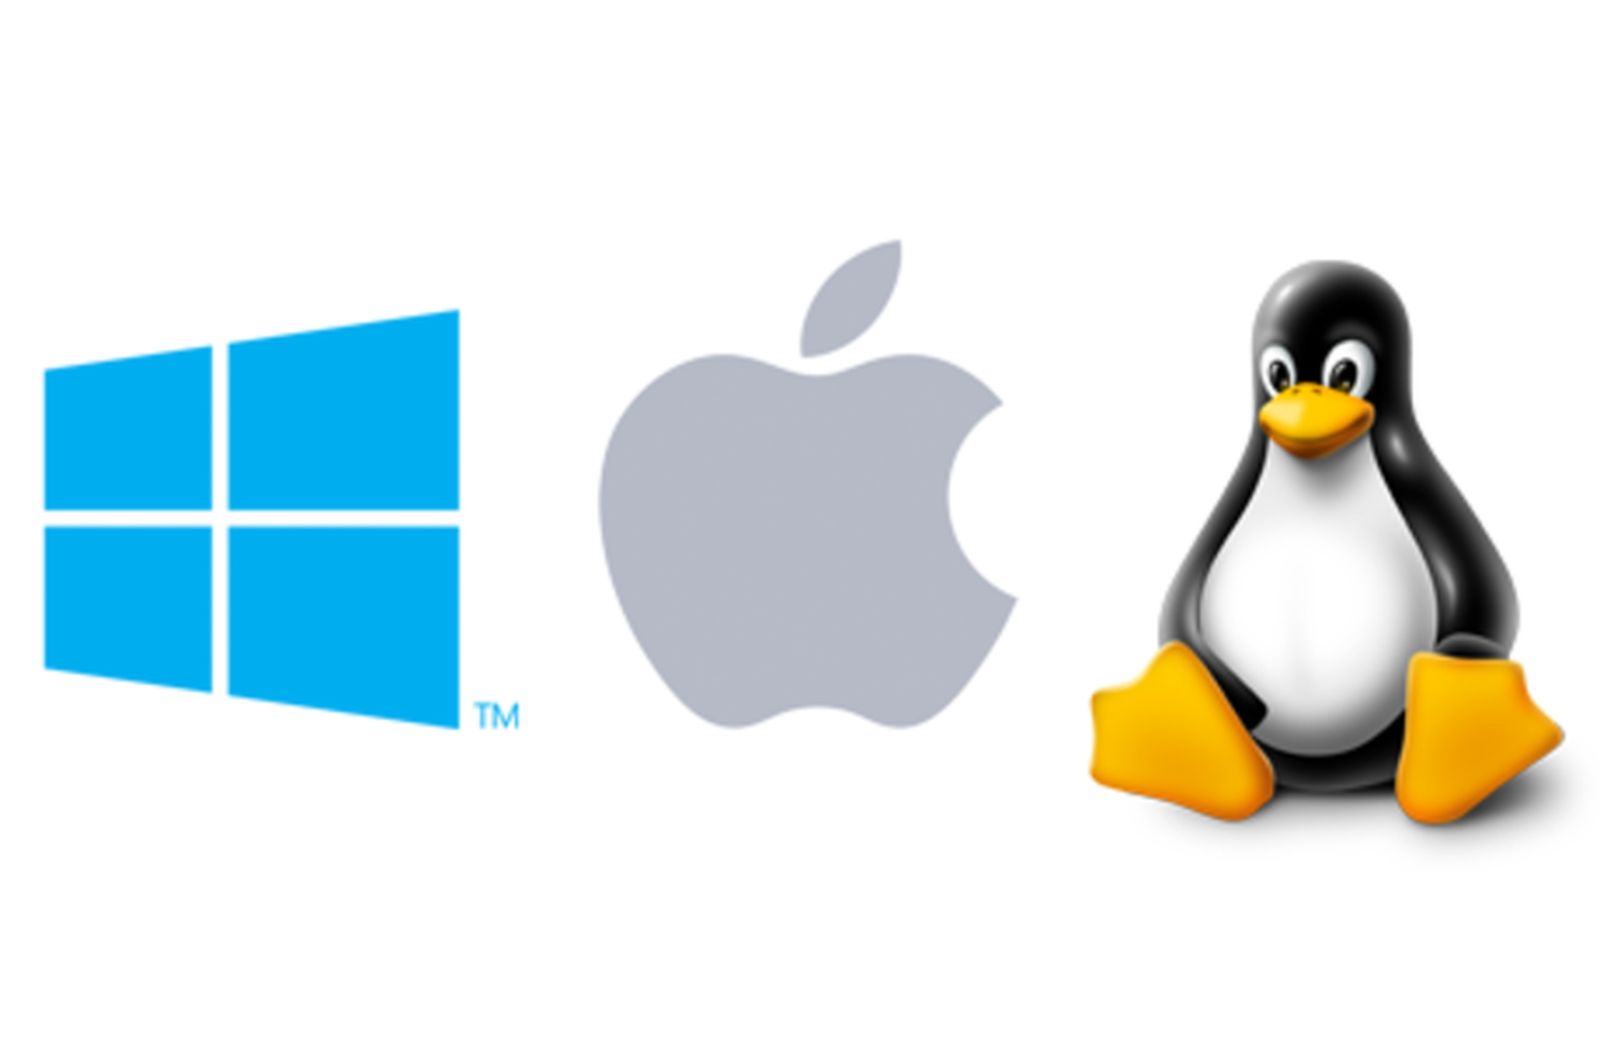 Ярлык ос. Виндовс линукс Мак ОС. Операционный системы линукс виндус Мак. Операционная система линукс + Мак + виндовс. Операционные системы линукс и виндовс.